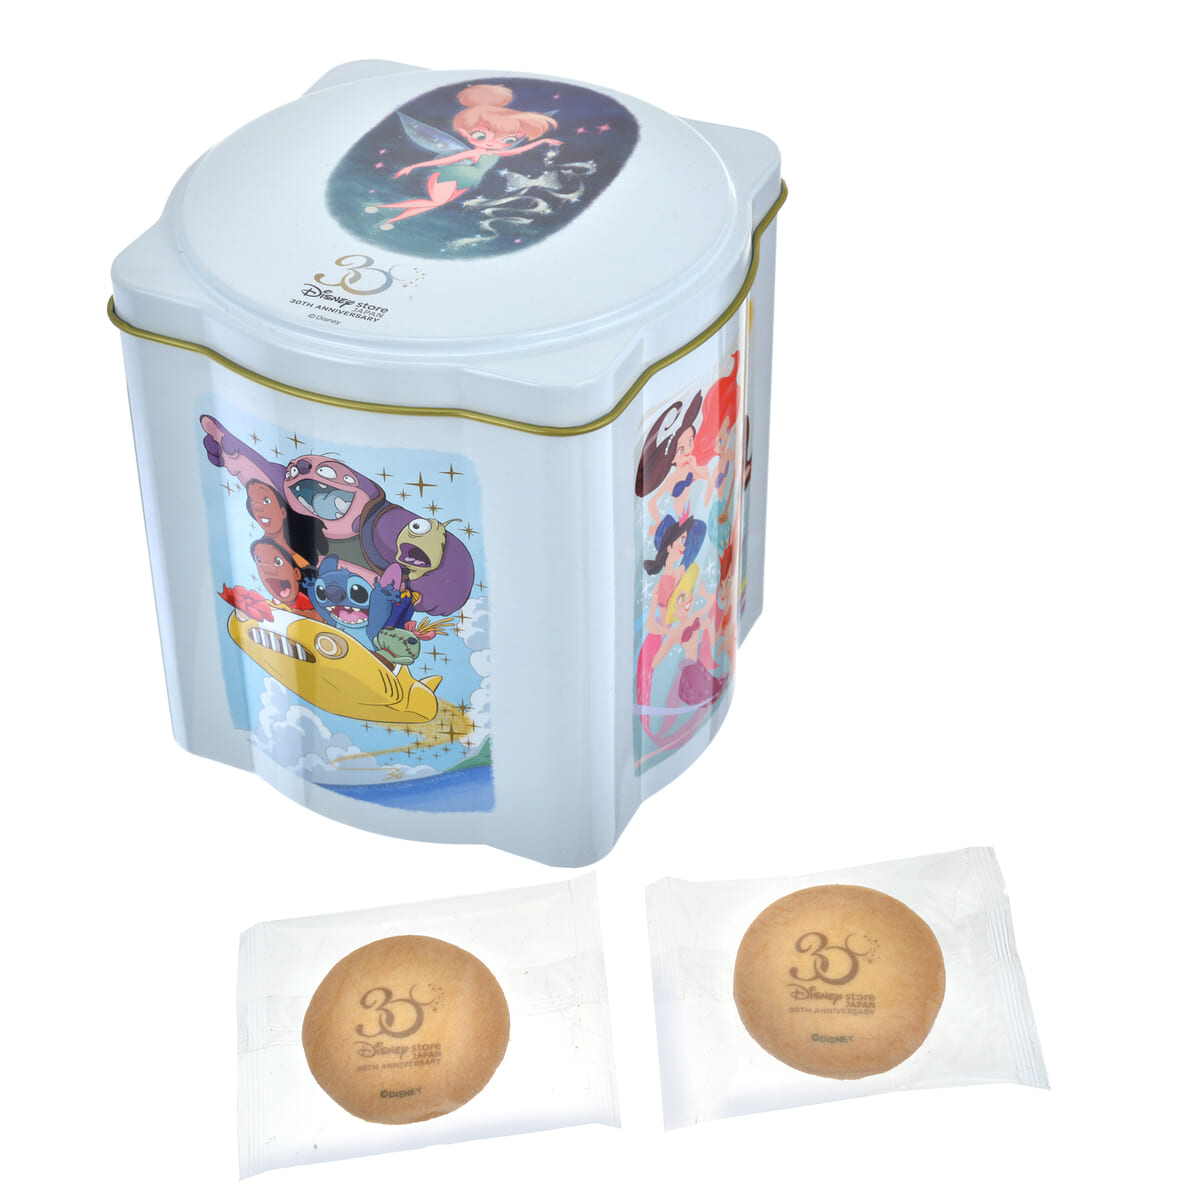 ディズニーキャラクター クッキー 缶入り Disney Store Japan 30th Anniversary